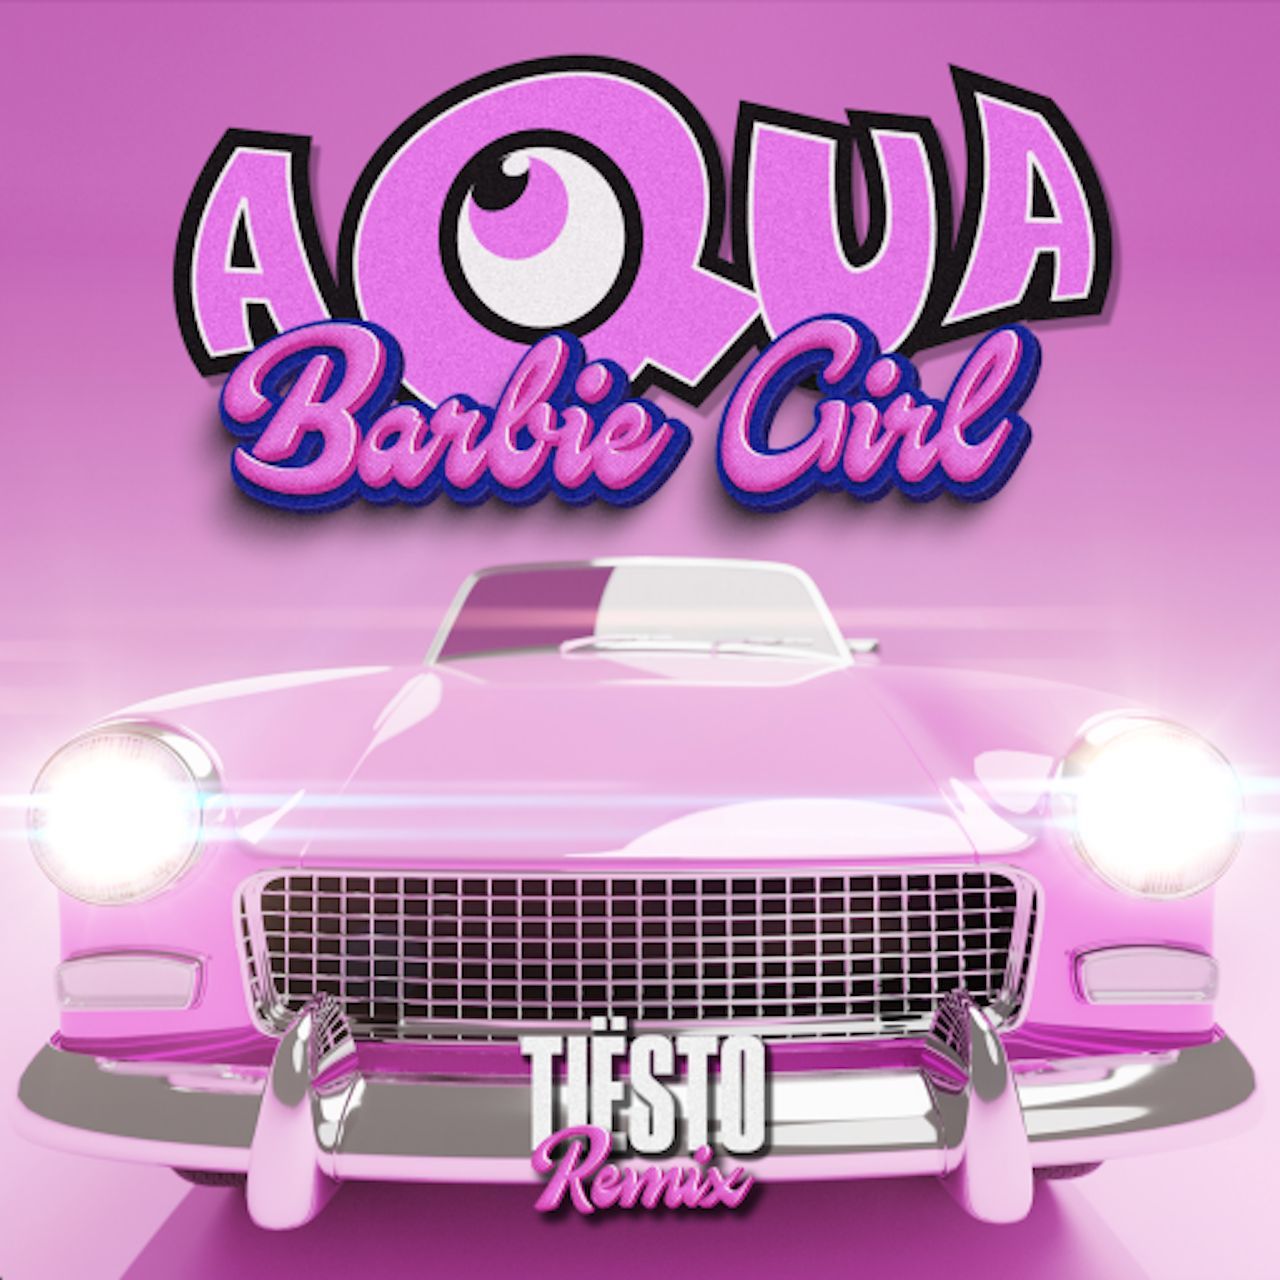 Barbie Girls Clube: Para quem não conhece